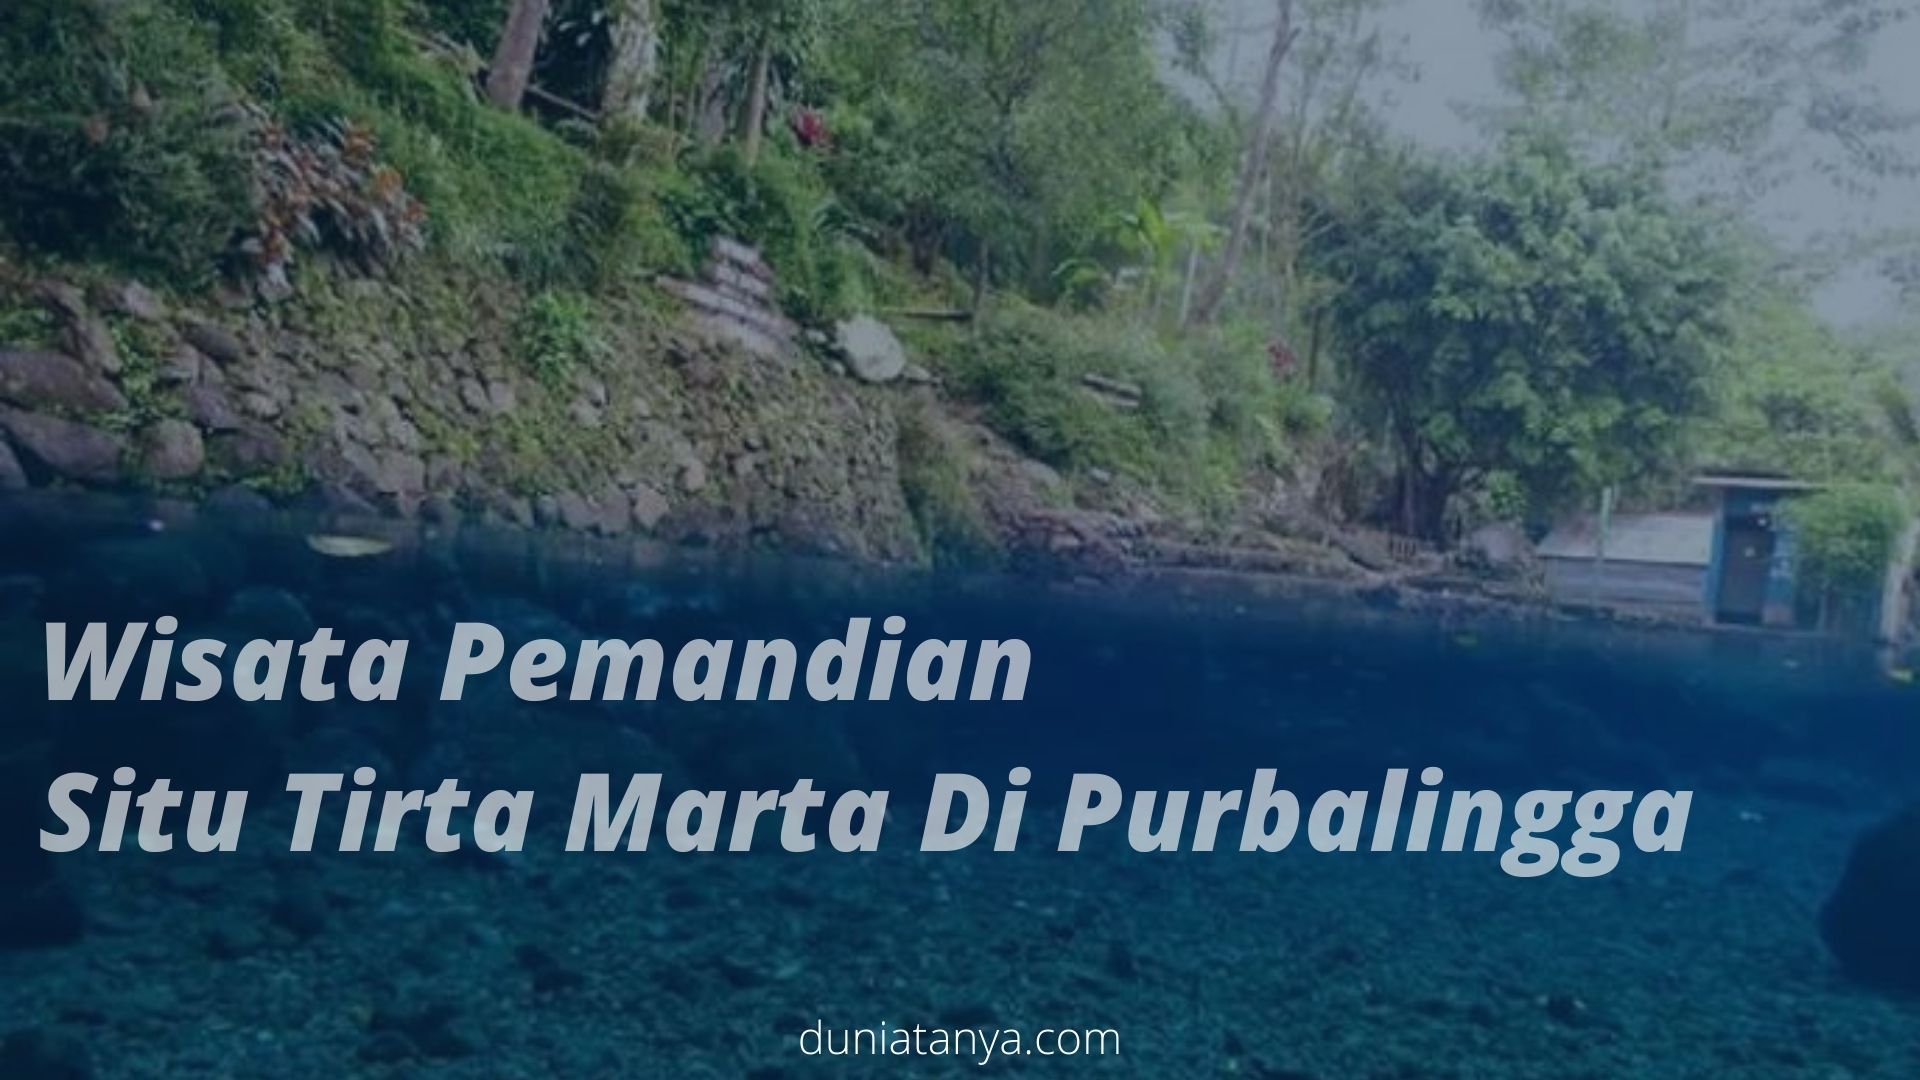 You are currently viewing Wisata Pemandian Situ Tirta Marta Di Purbalingga